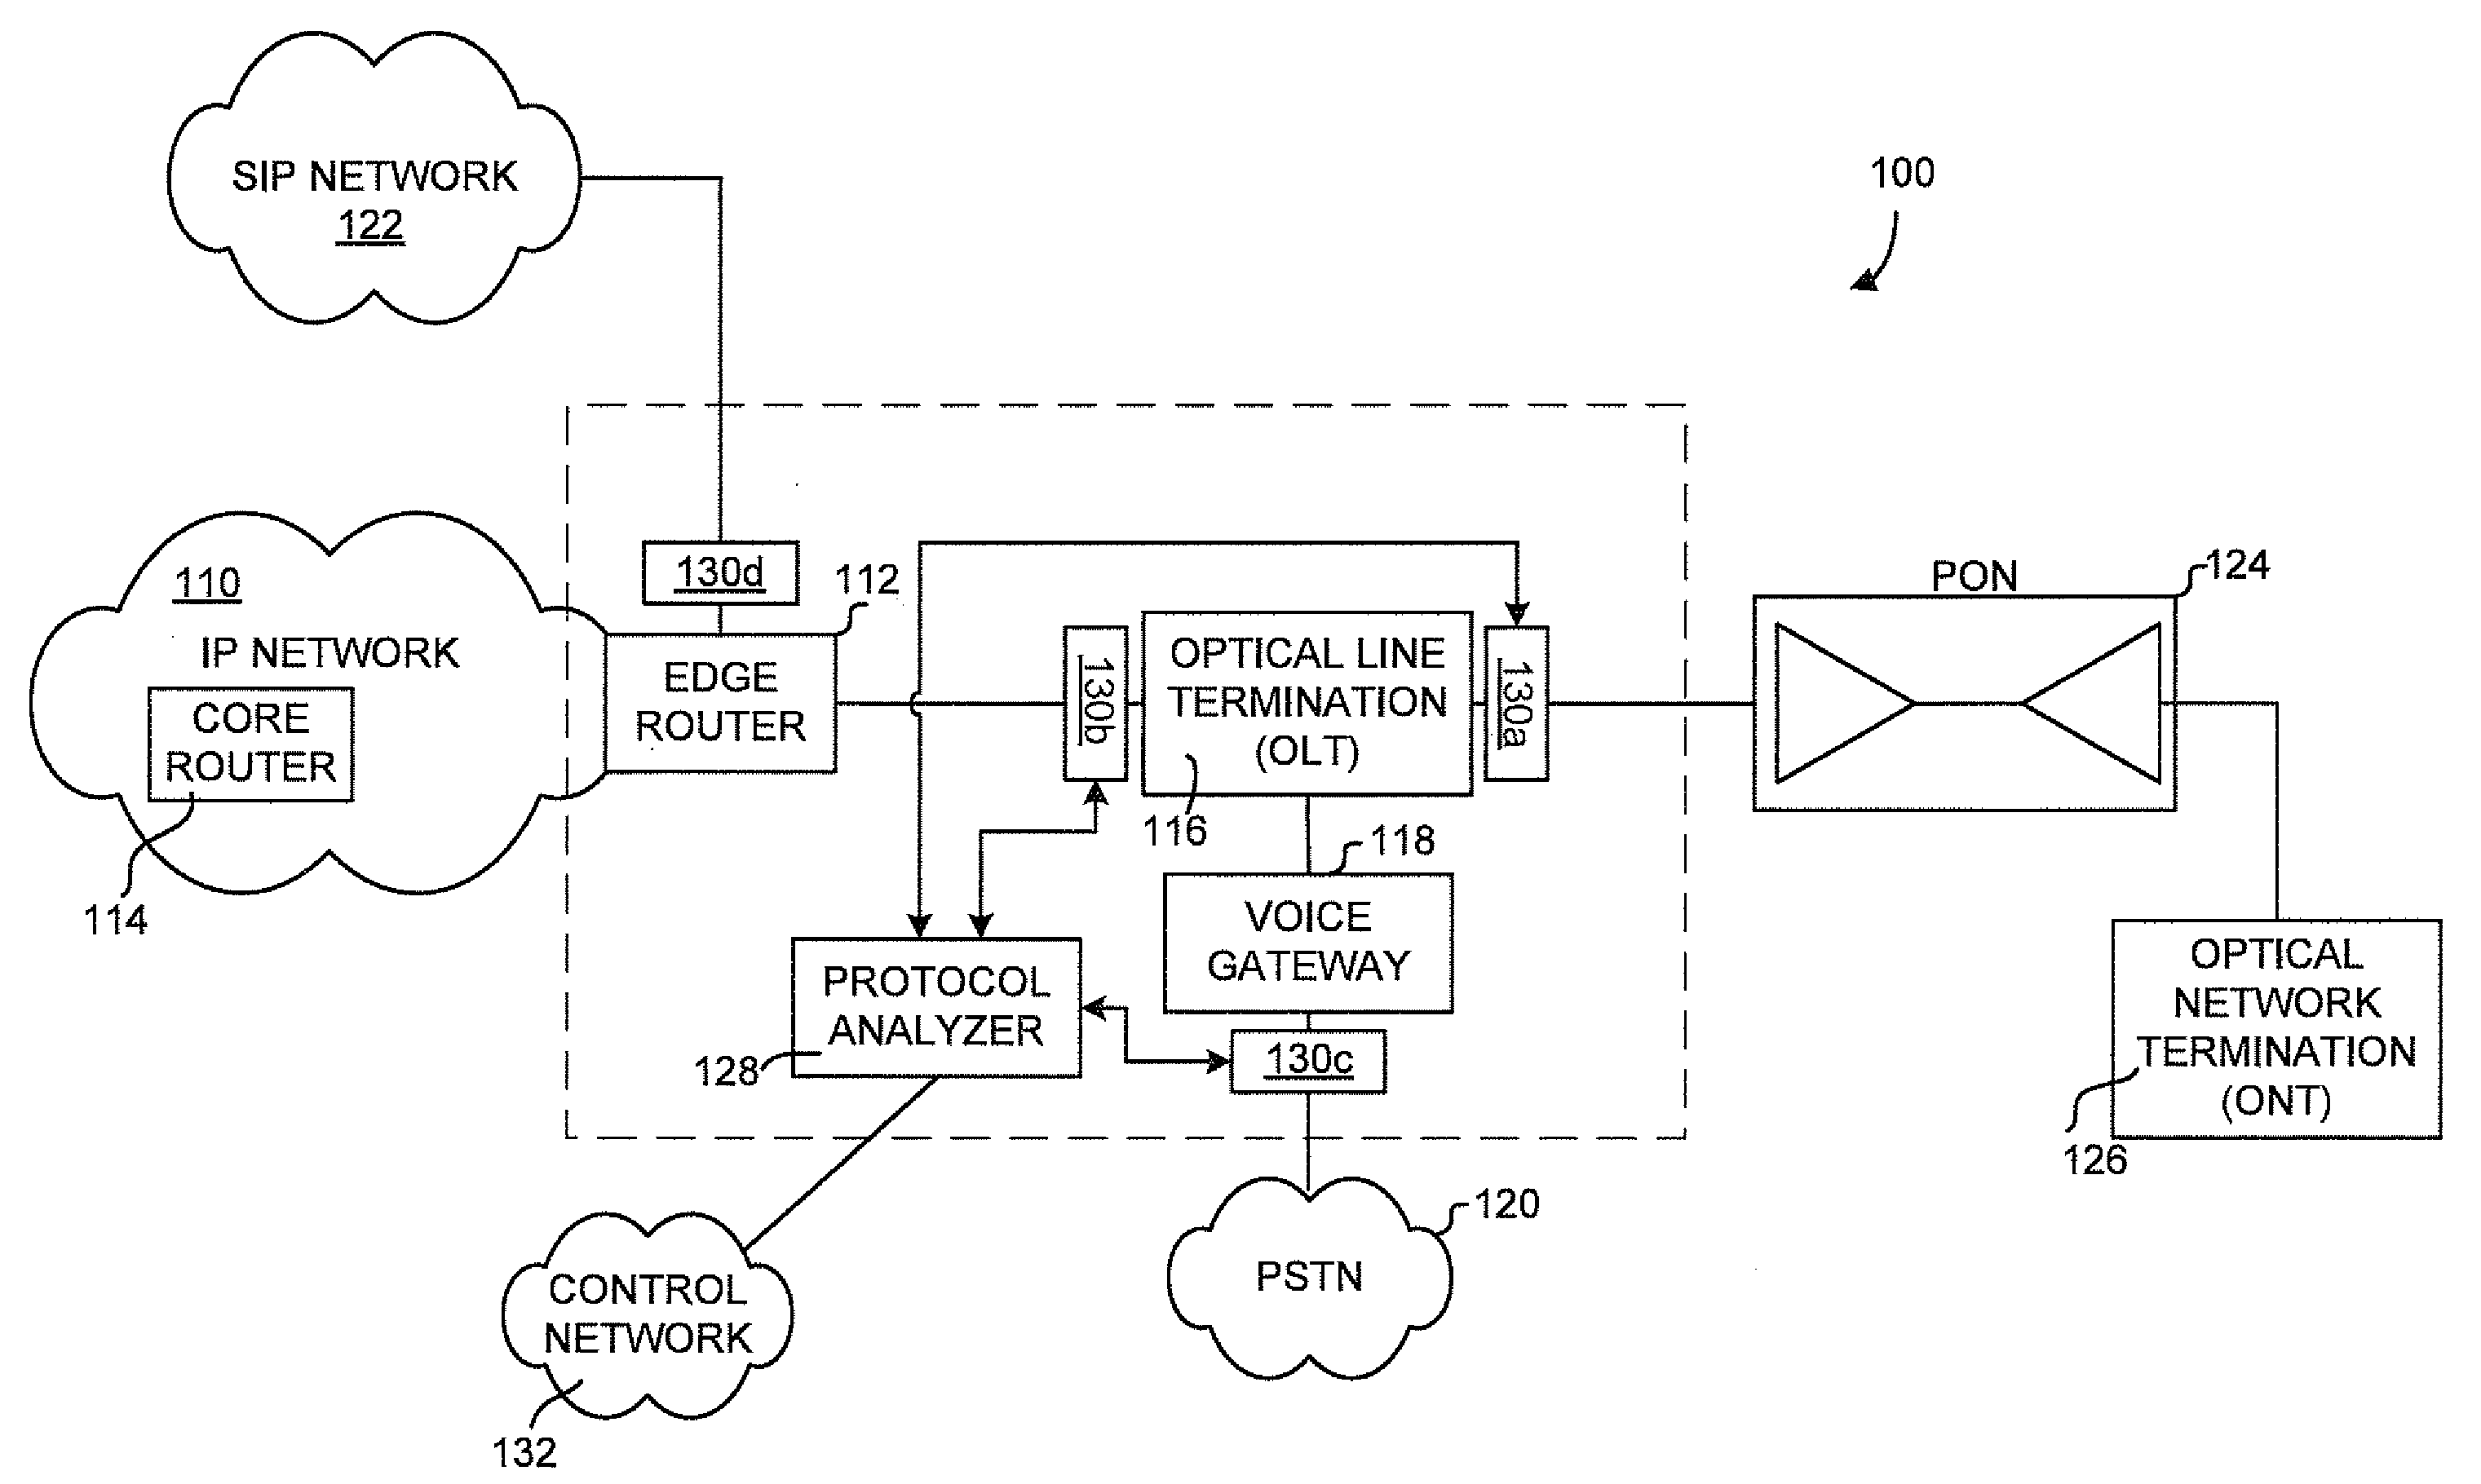 Multi-interface protocol analysis system